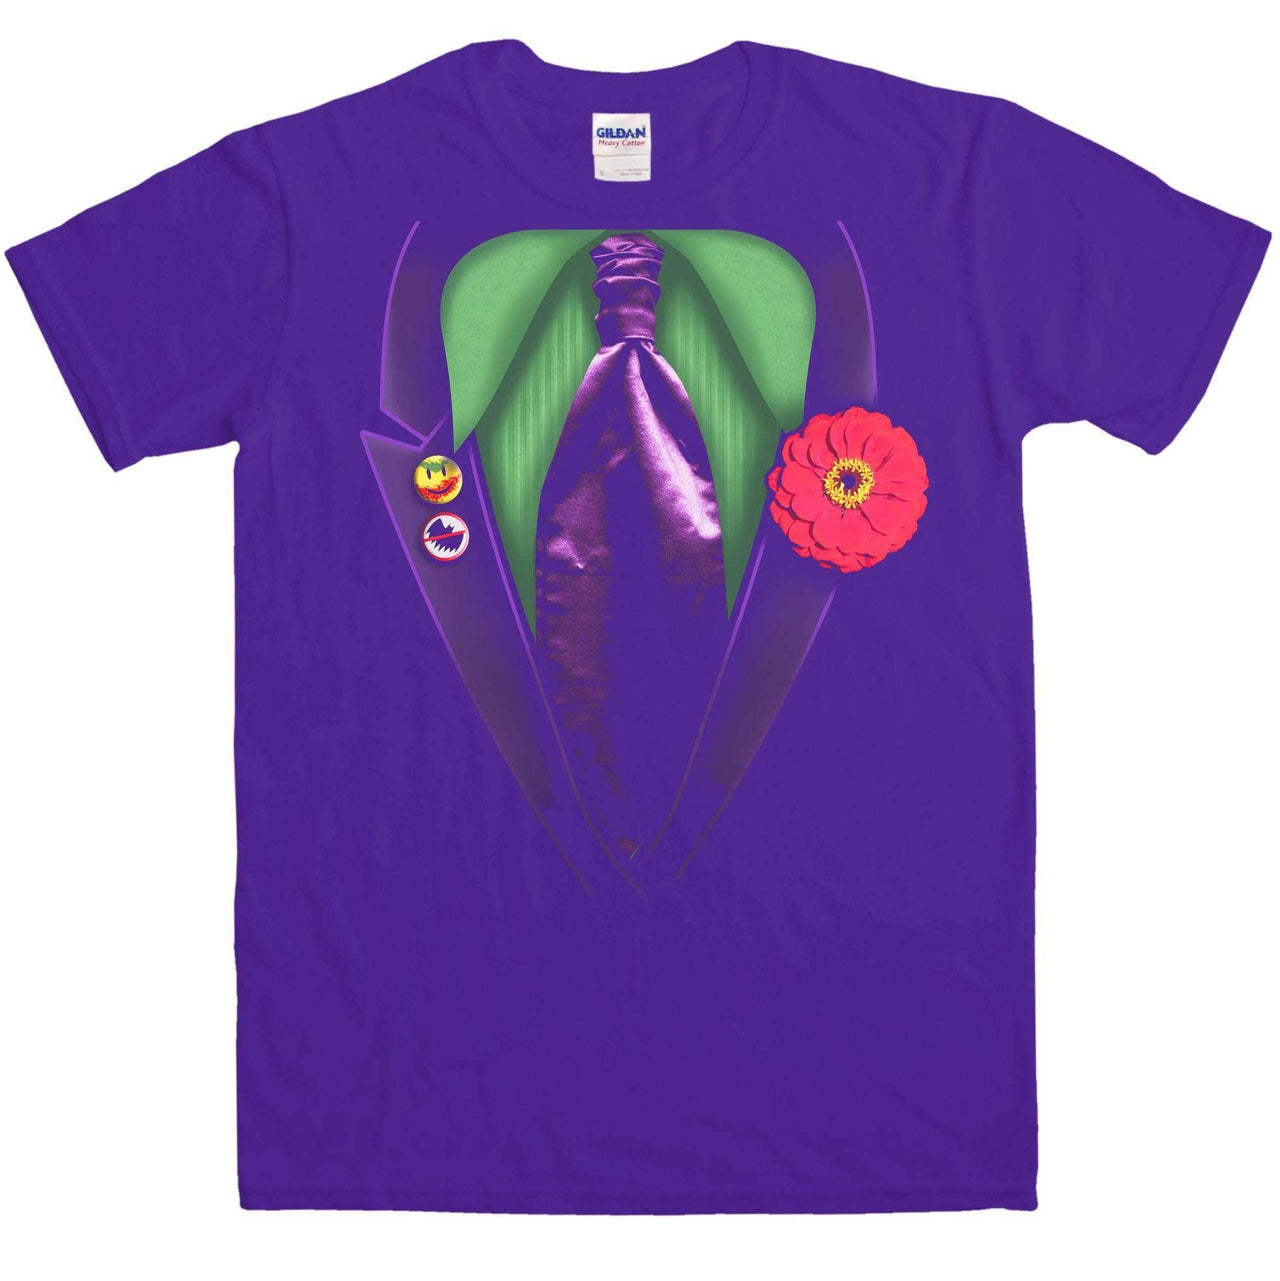 Joker Fancy Dress Mens T-Shirt 8Ball